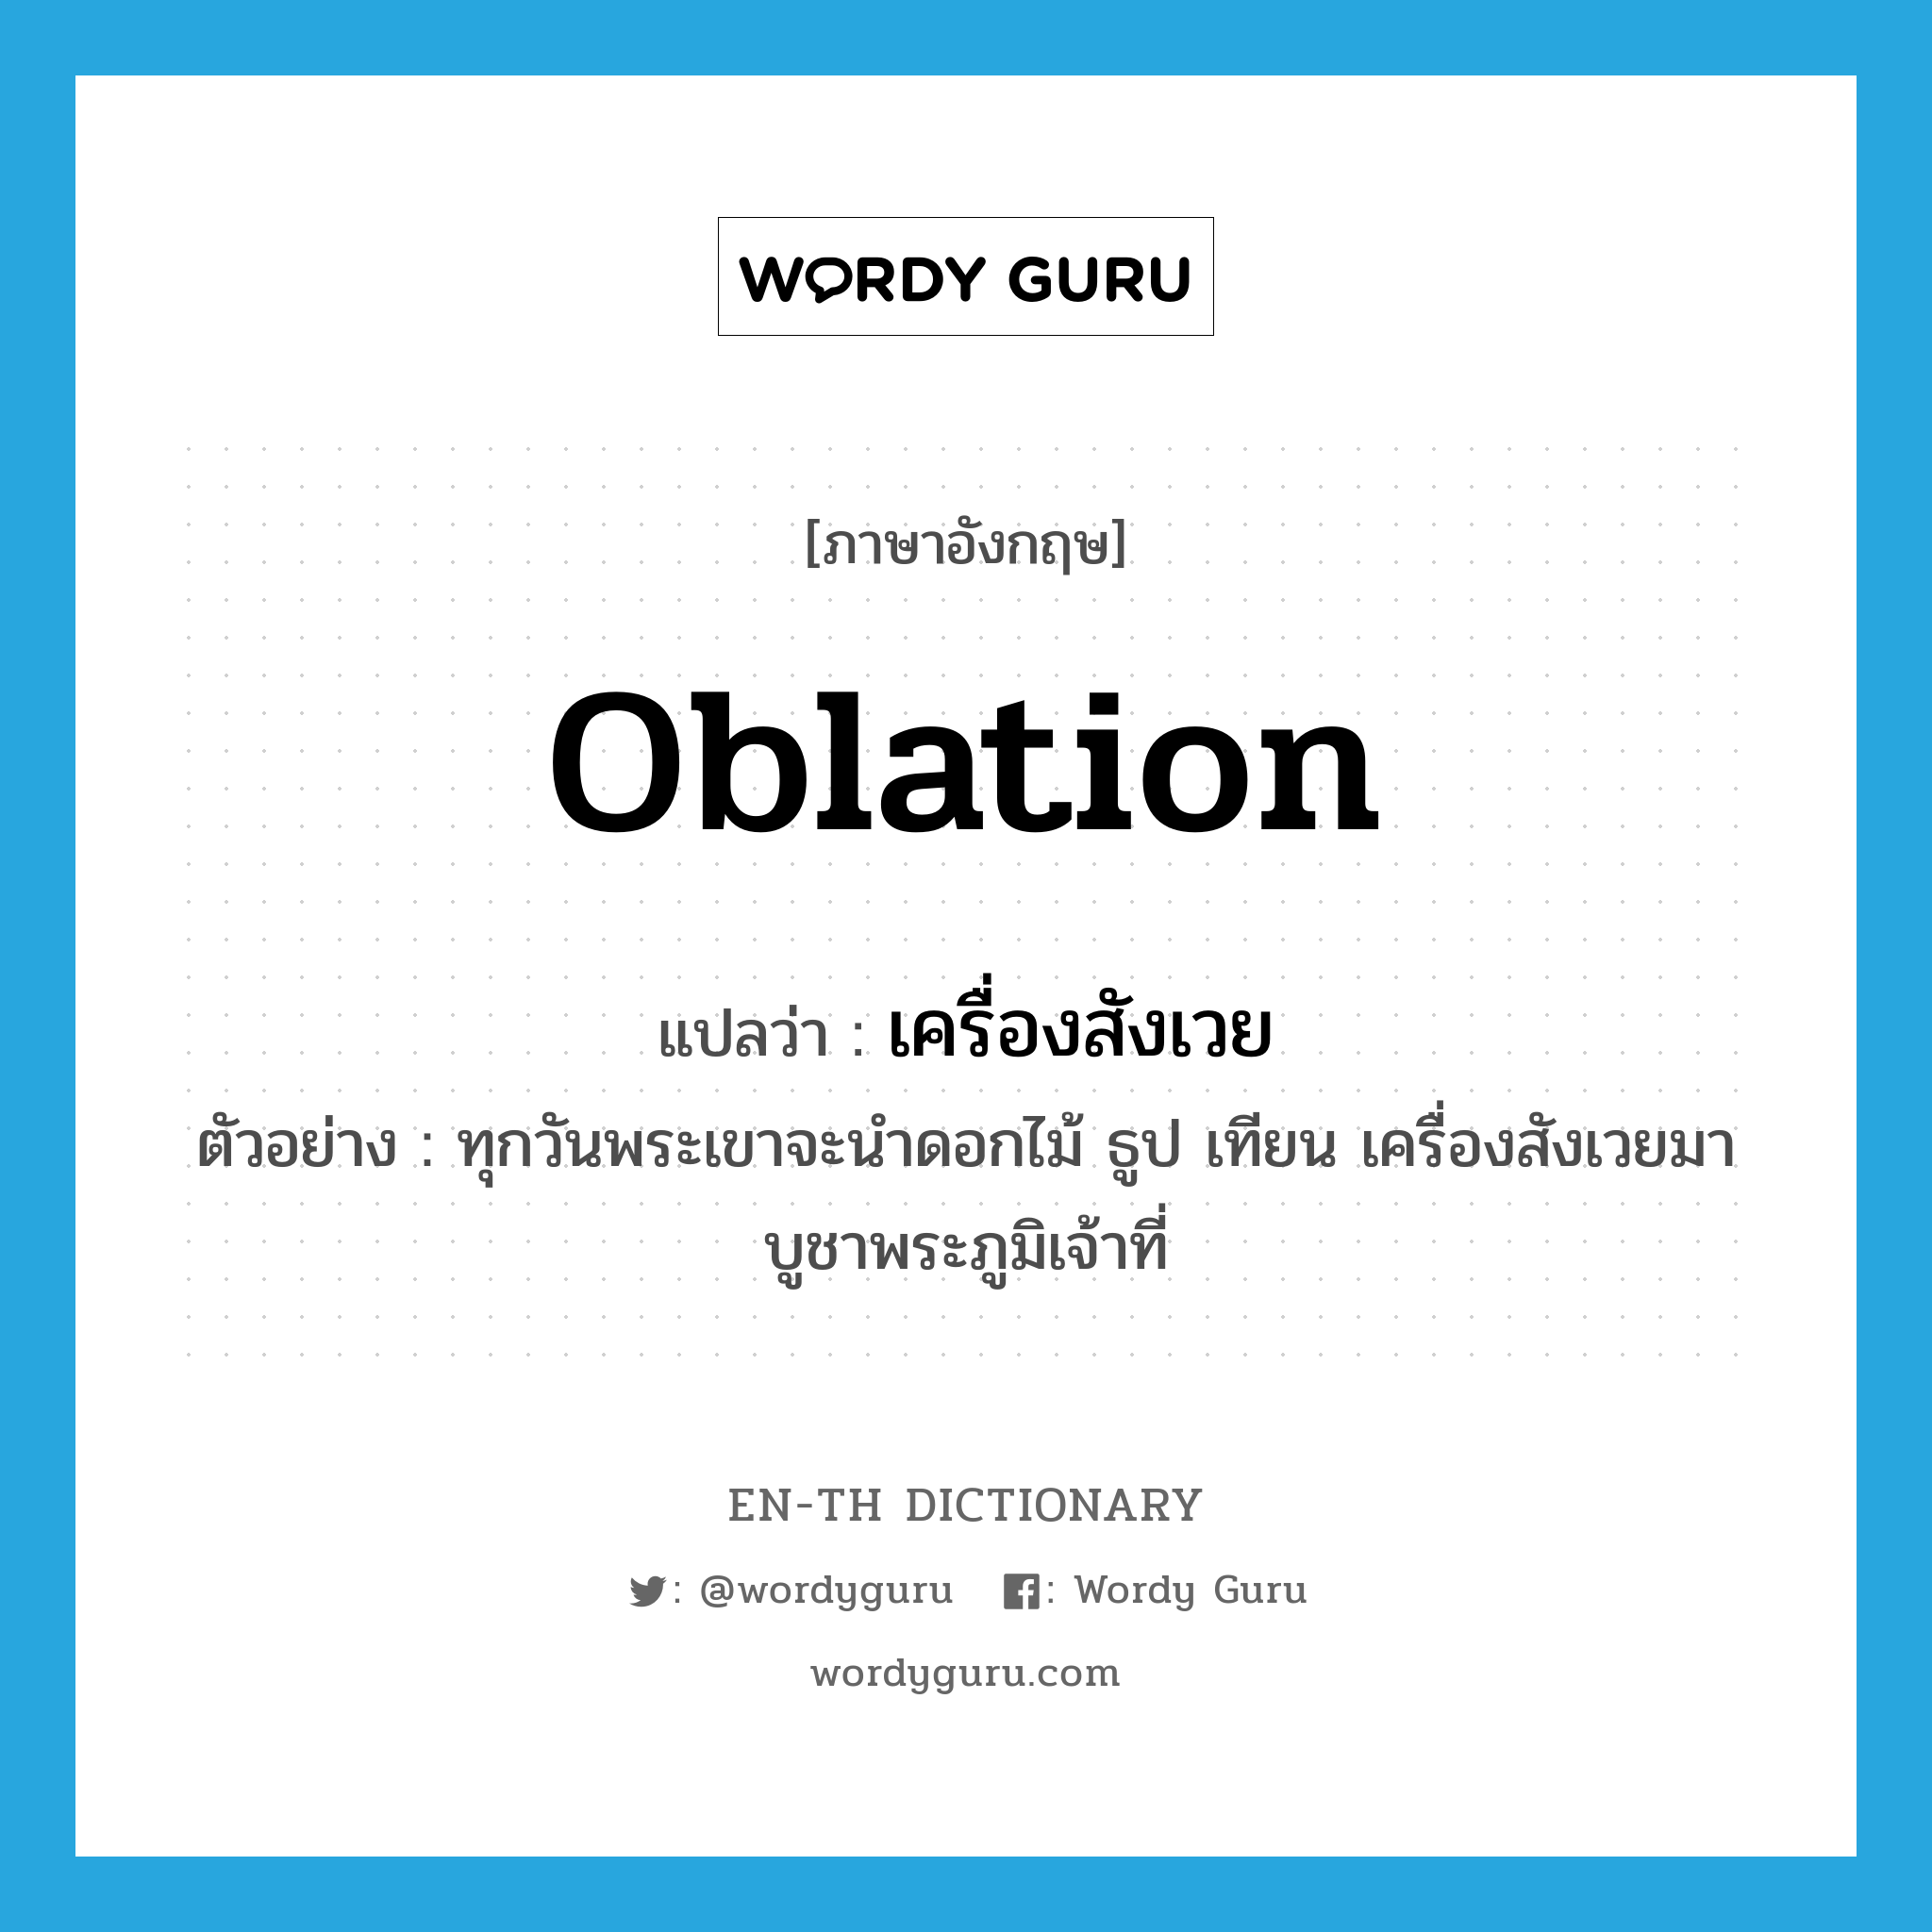 oblation แปลว่า?, คำศัพท์ภาษาอังกฤษ oblation แปลว่า เครื่องสังเวย ประเภท N ตัวอย่าง ทุกวันพระเขาจะนำดอกไม้ ธูป เทียน เครื่องสังเวยมาบูชาพระภูมิเจ้าที่ หมวด N